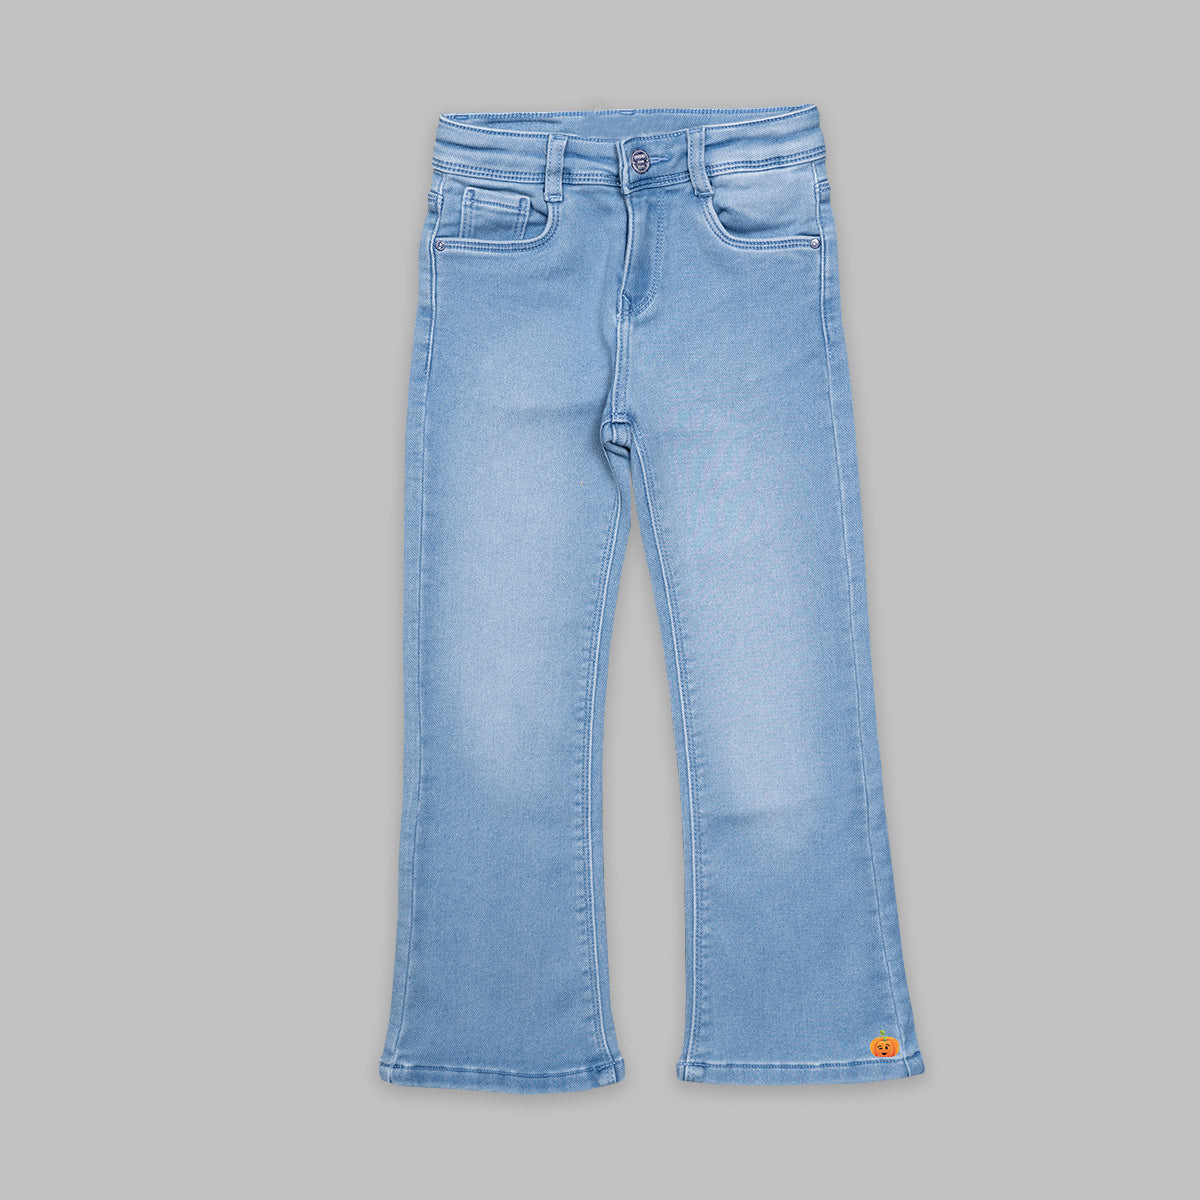 Buy Girls Blue Skinny Fit Jeans Online - 865645 | Allen Solly